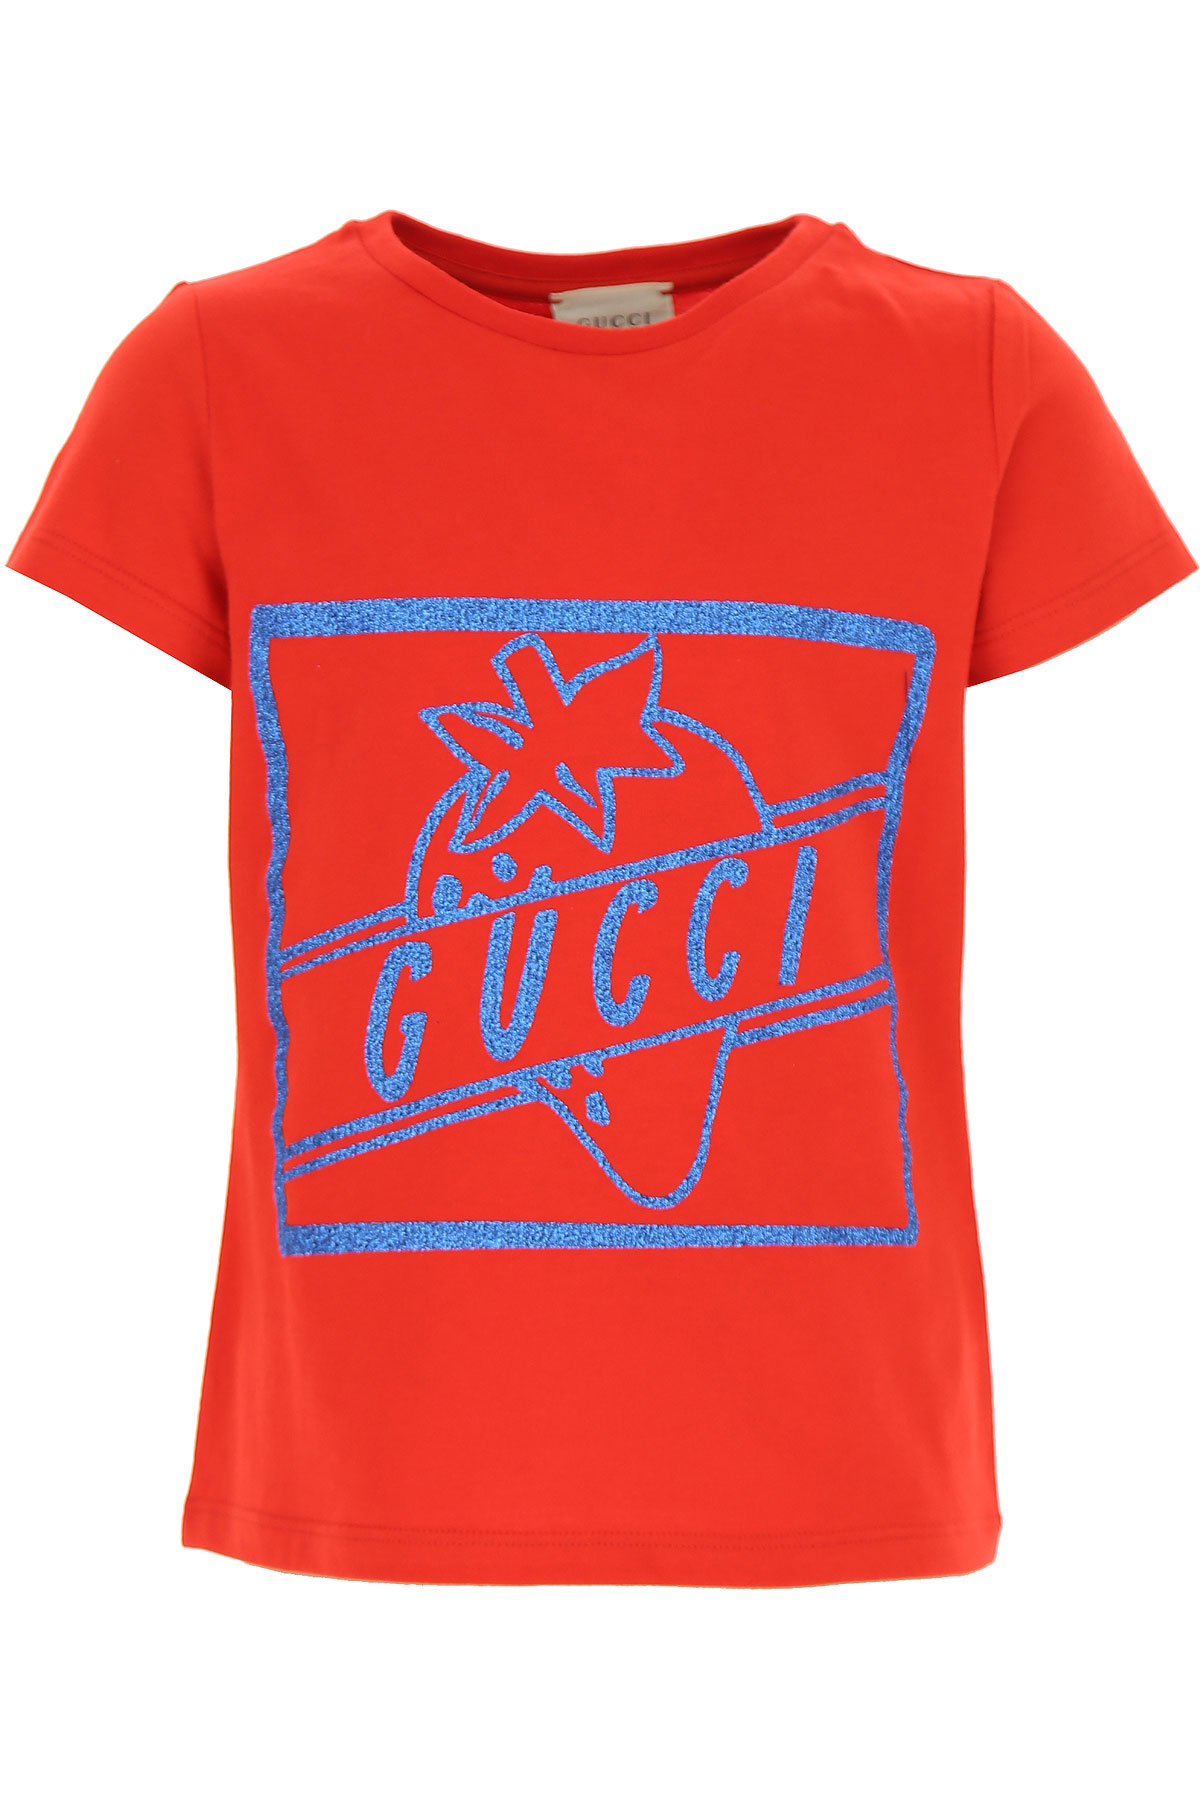 Gucci Kinder T-Shirt für Mädchen Günstig im Sale, Rot, Baumwolle, 2017, 4Y 6Y